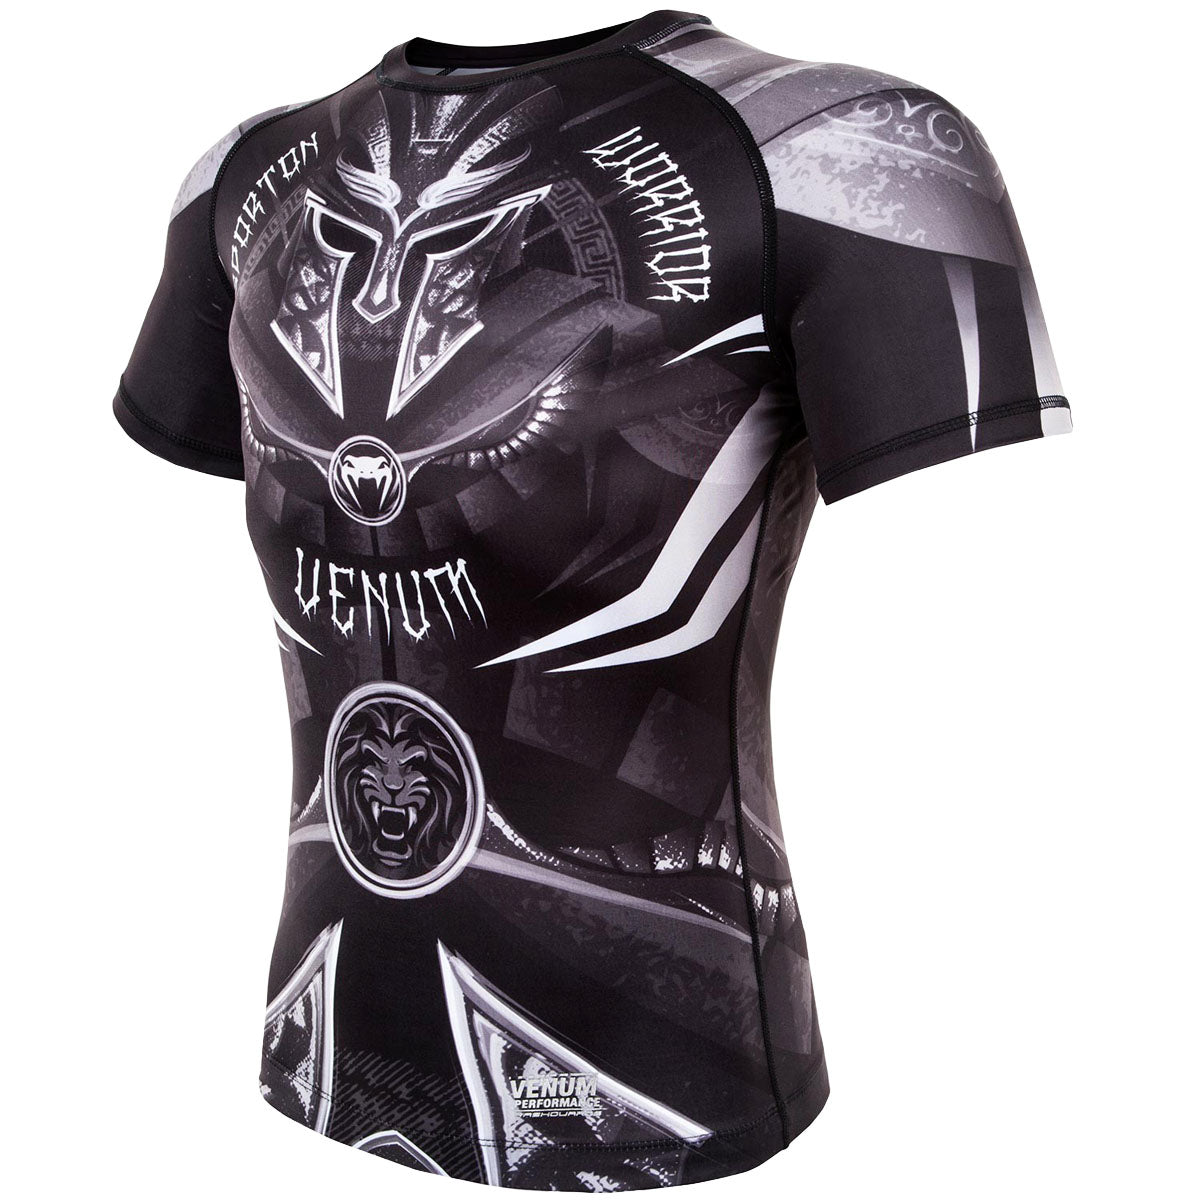 Venum Gladiator 3.0 Short Sleeve MMA Compression Rashguard - Black/White Venum